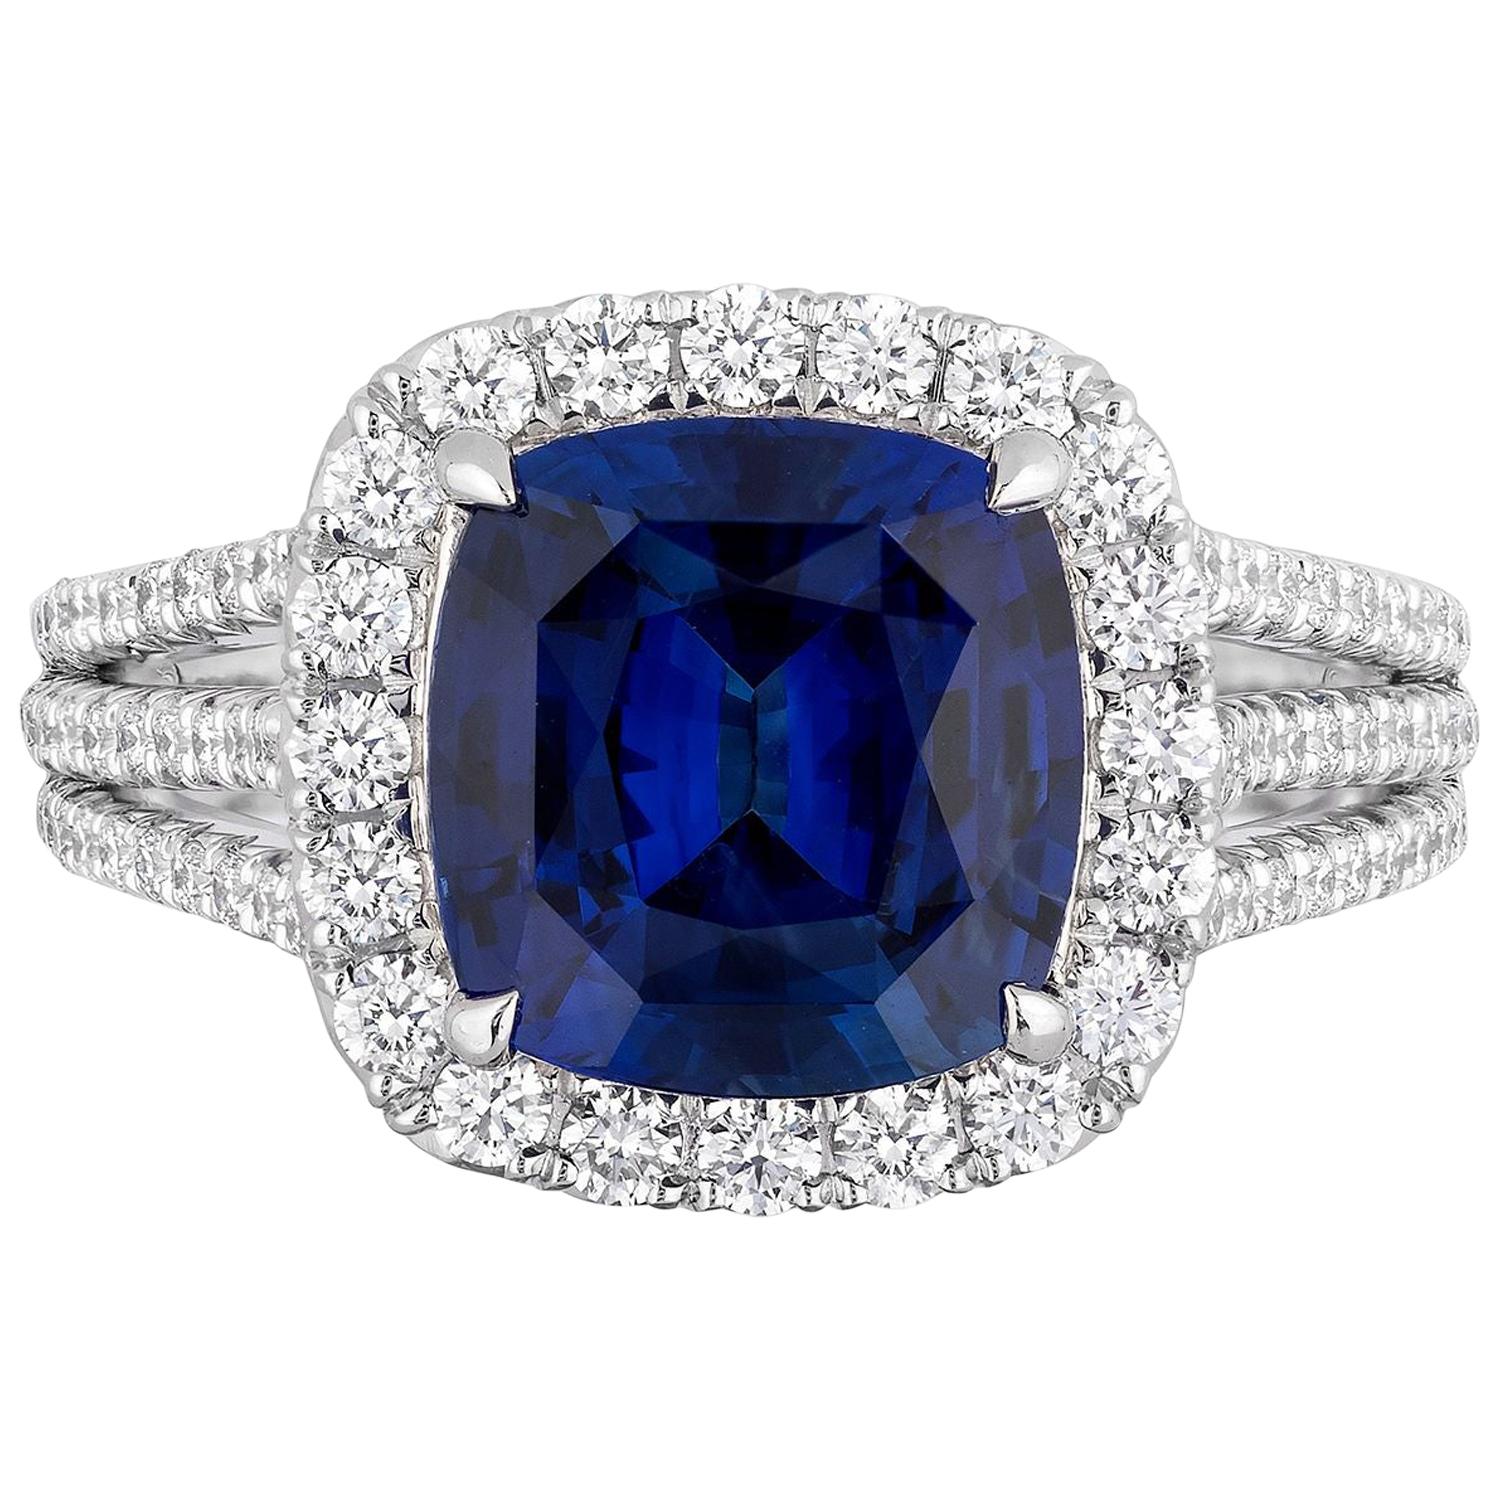 Bague cocktail en diamants et saphir bleu royal taille coussin certifié CDC LAB de 4,11 carats